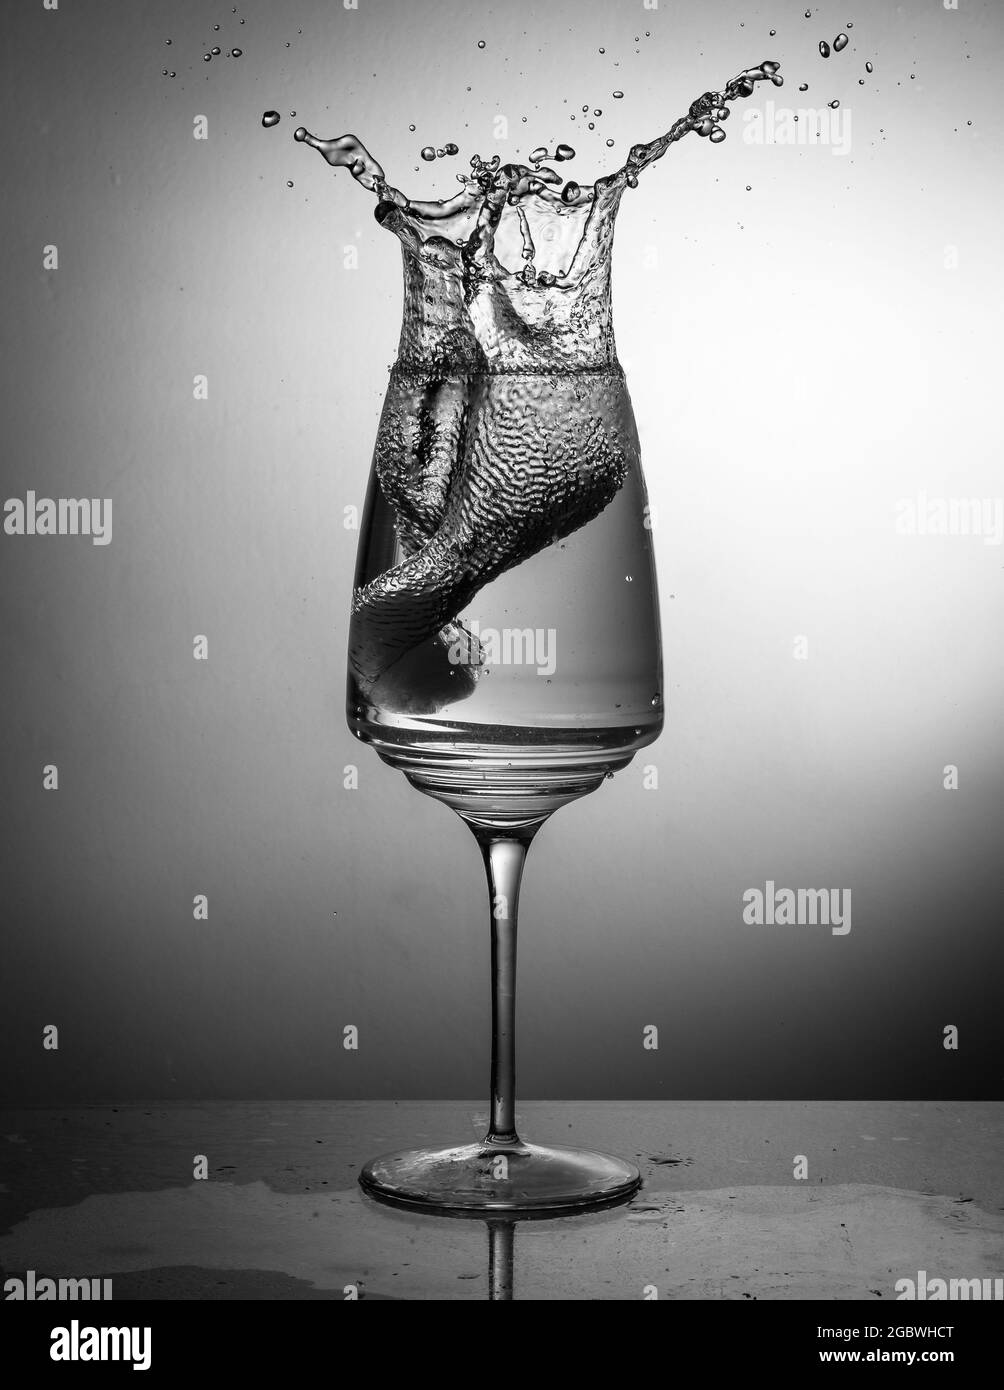 Prise de vue verticale en niveaux de gris d'un verre à vin avec éclaboussures d'eau Banque D'Images